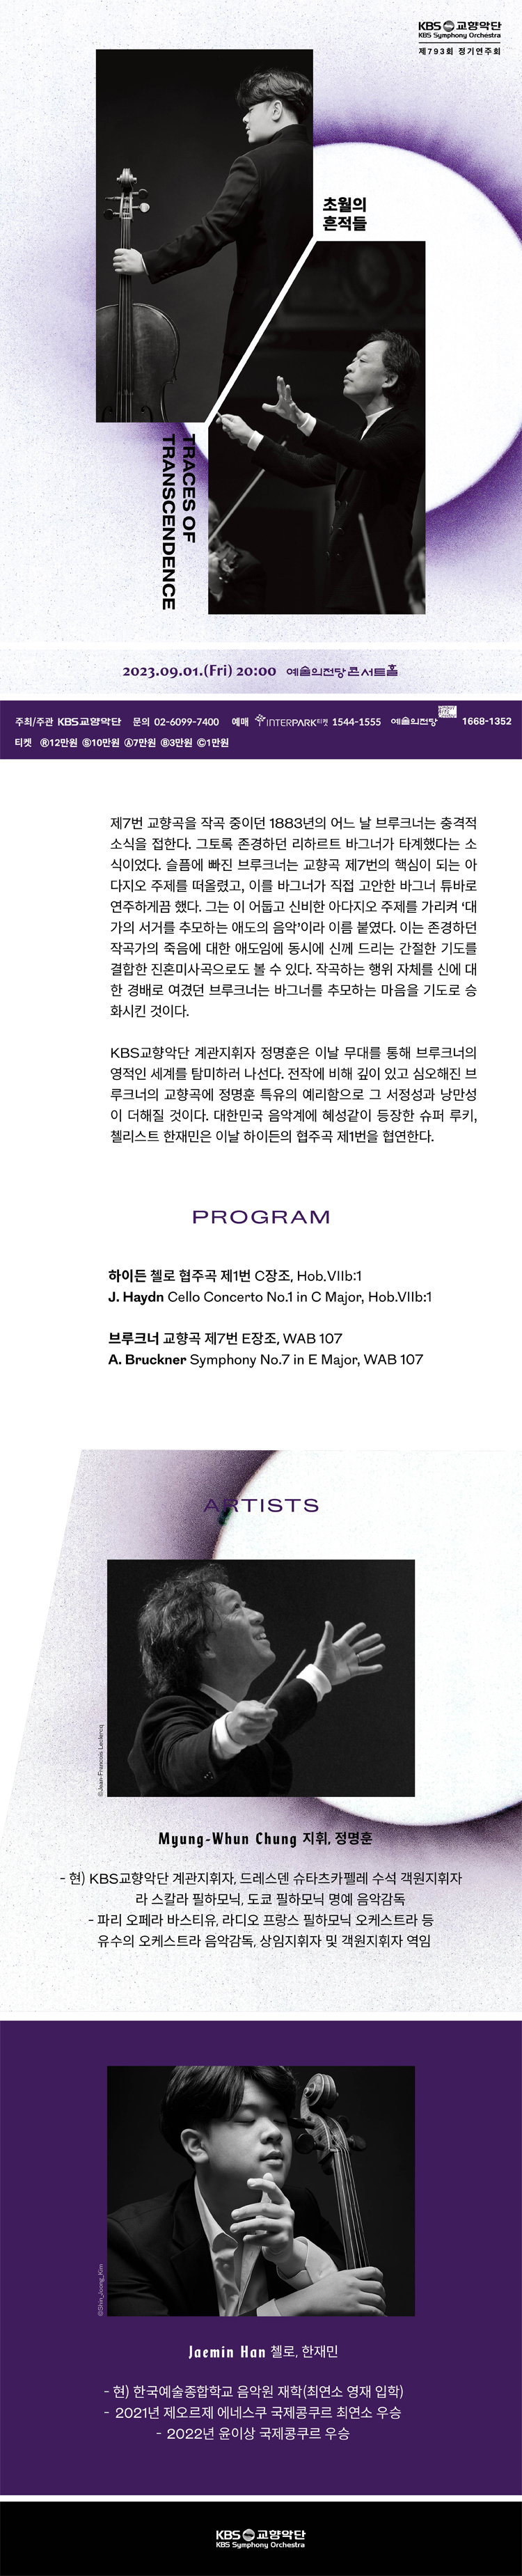 [공통] KBS_793_Web Leaflet.jpg